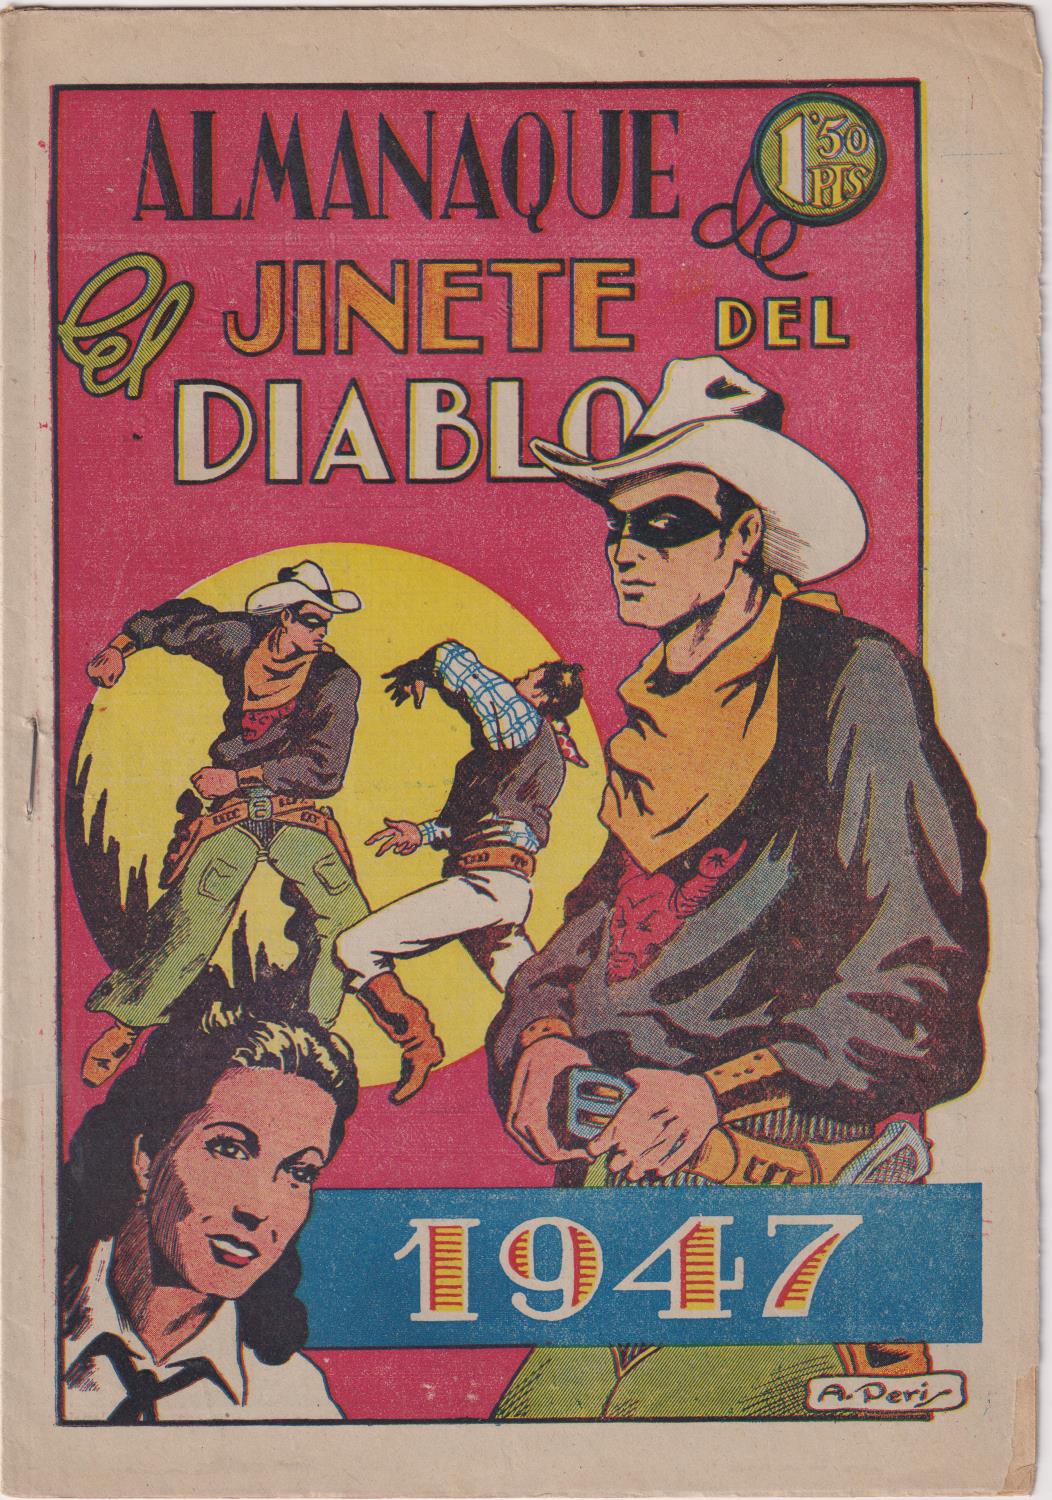 Almanaque El Jinete del Diablo 1947. Ediciones lerso. MUY ESCASO